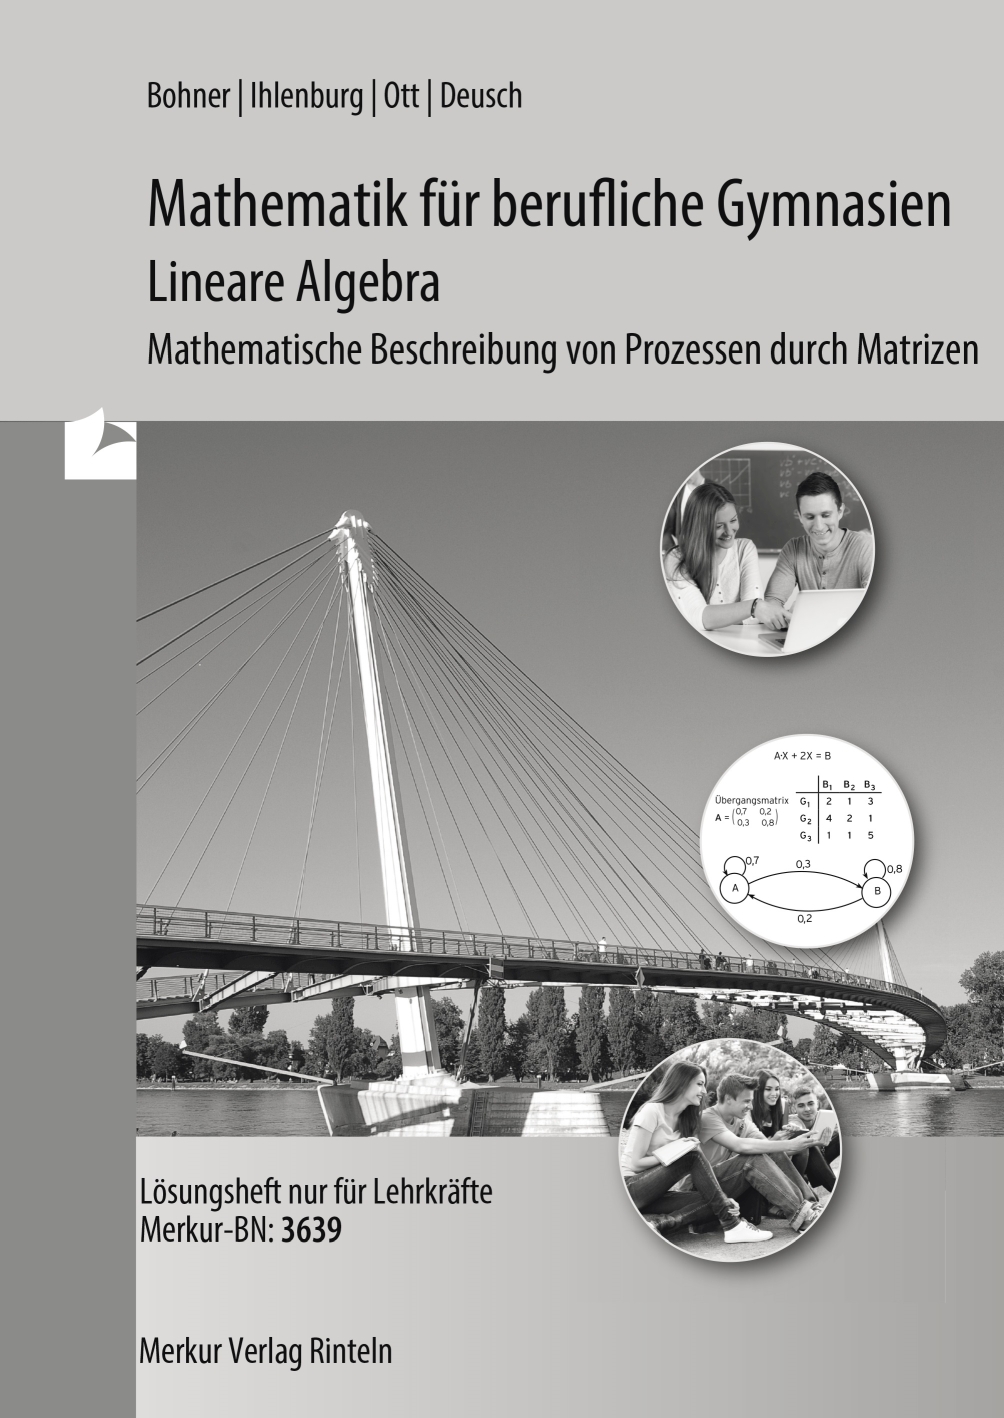 Mathematik für berufliche Gymnasien - Lineare Algebra - Mathematische Beschreibung von Prozessen durch Matrizen - Lösungen